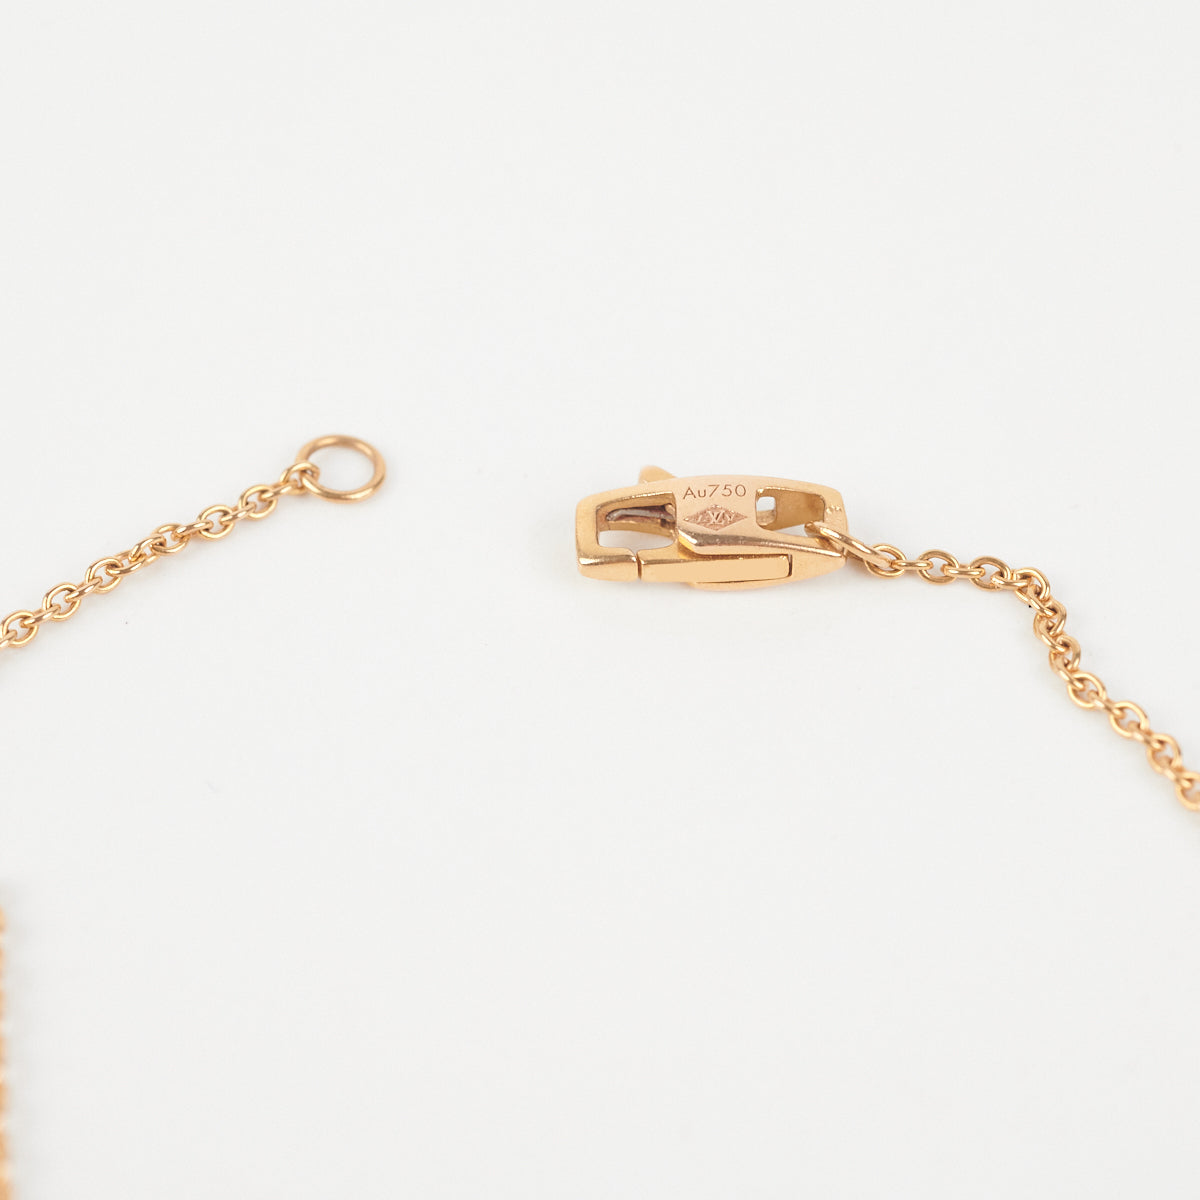 Louis Vuitton Empreinte Medallion, Yellow Gold Gold. Size NSA